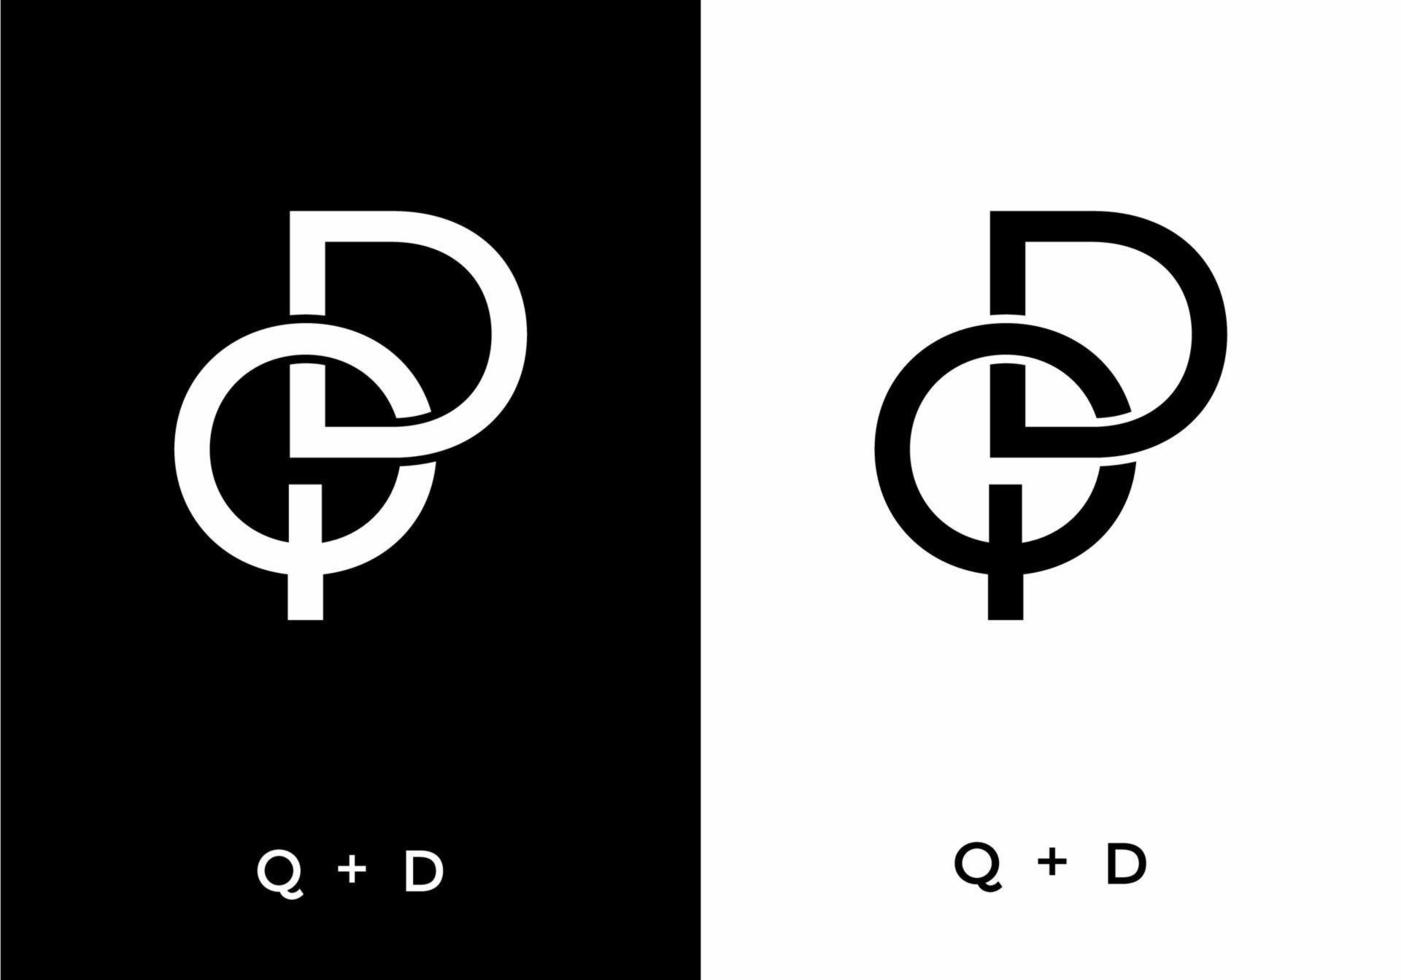 Schwarz-Weiß-Farbe des Anfangsbuchstabens qd oder dq vektor